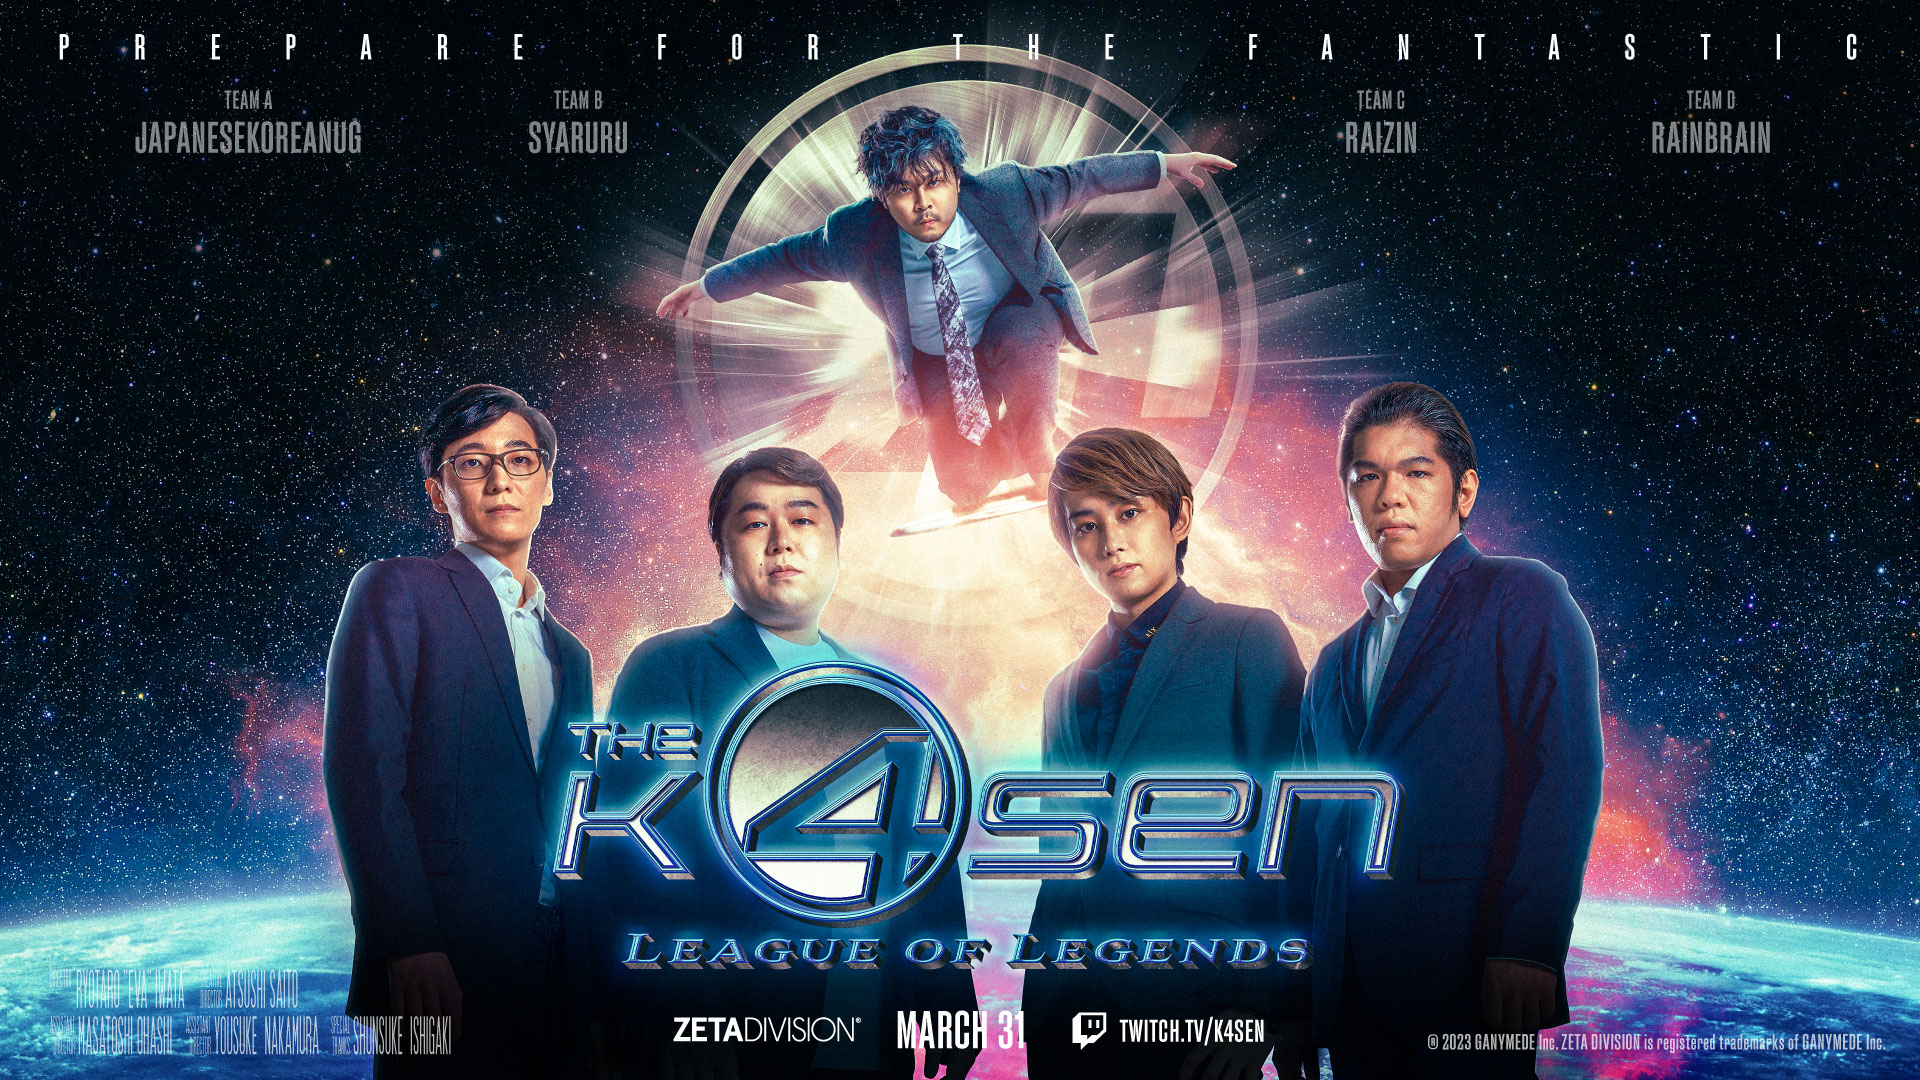 出演情報 – k4sen, ta1yo, 鈴木ノリアキ, 関優太が『League of Legends The k4sen』に出演